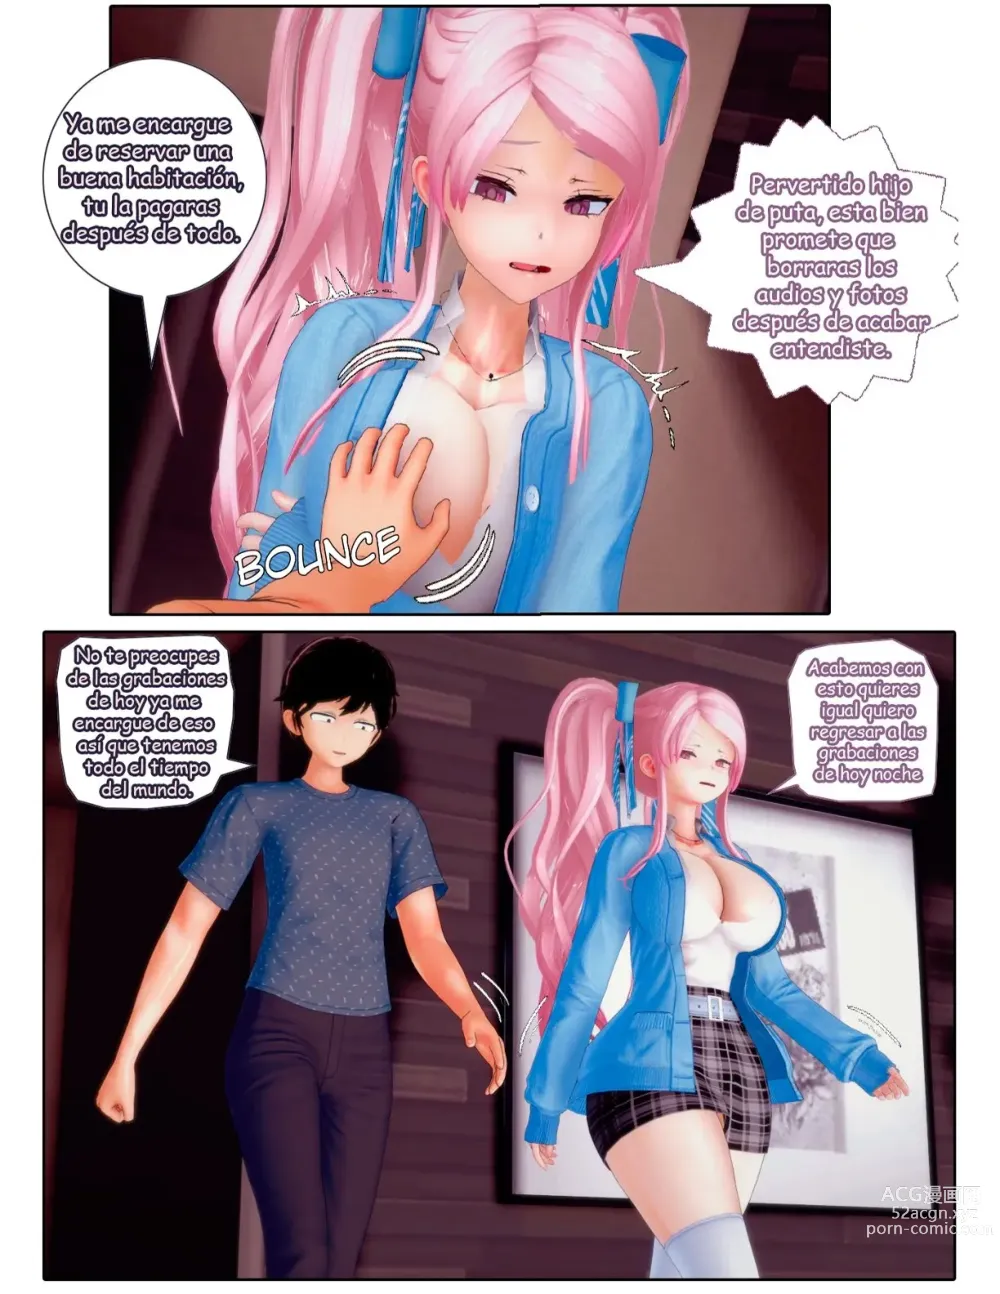 Page 8 of doujinshi Chantaje Sexual a mi prima la Idol #1 y 2